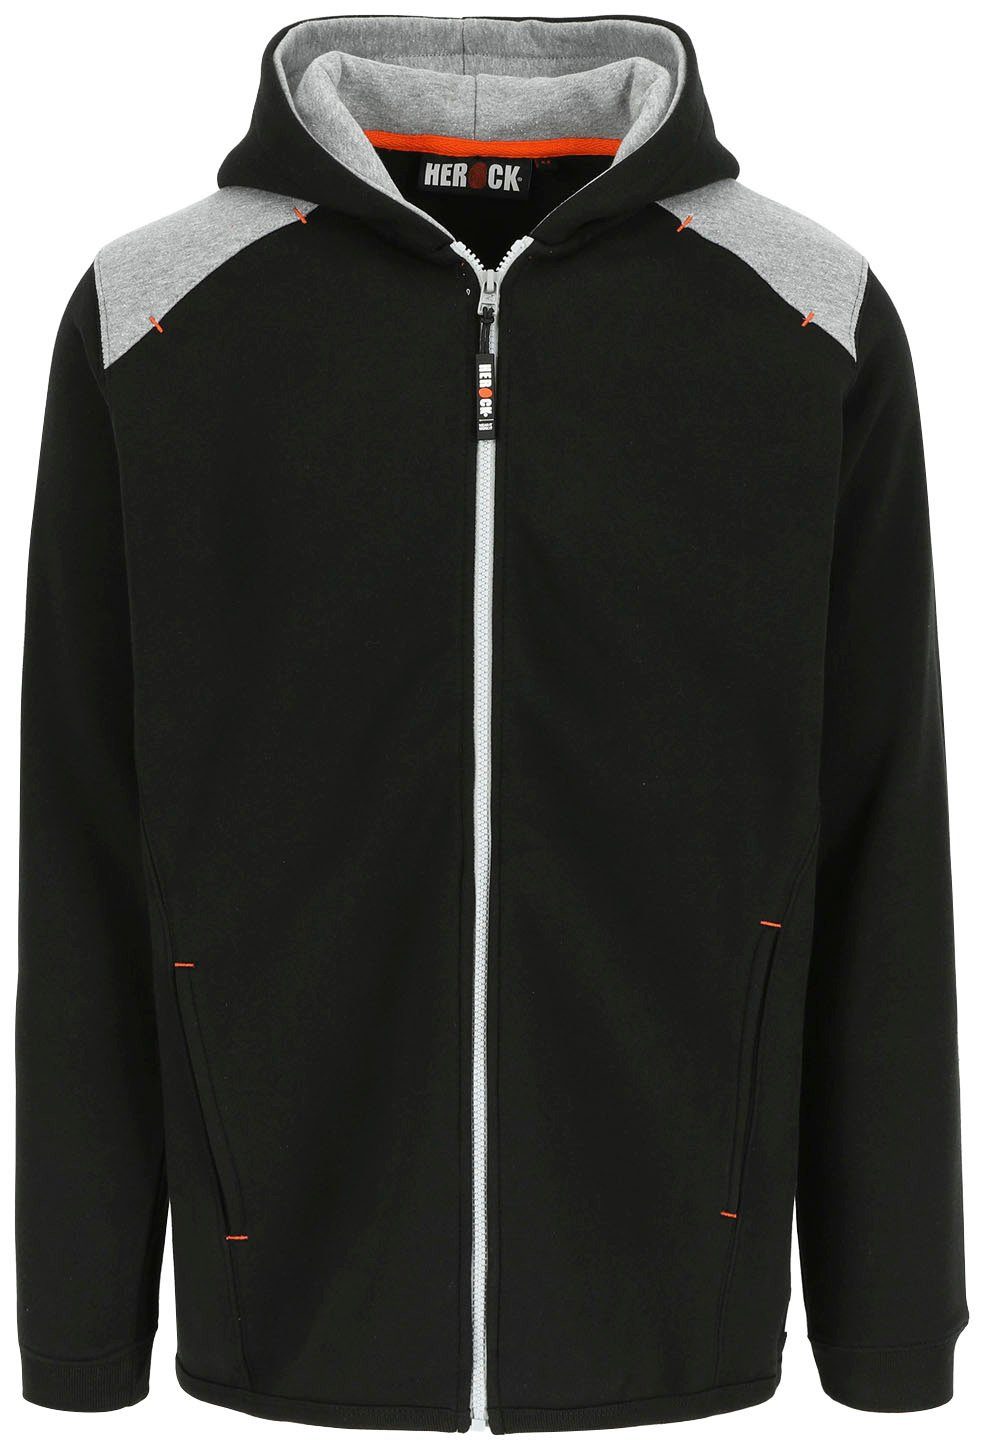 Herock Kapuzenpullover Juno Sweater mit Kapuze Angenehme Jacke mit langem Rückenteil und langem Reißverschluss schwarz